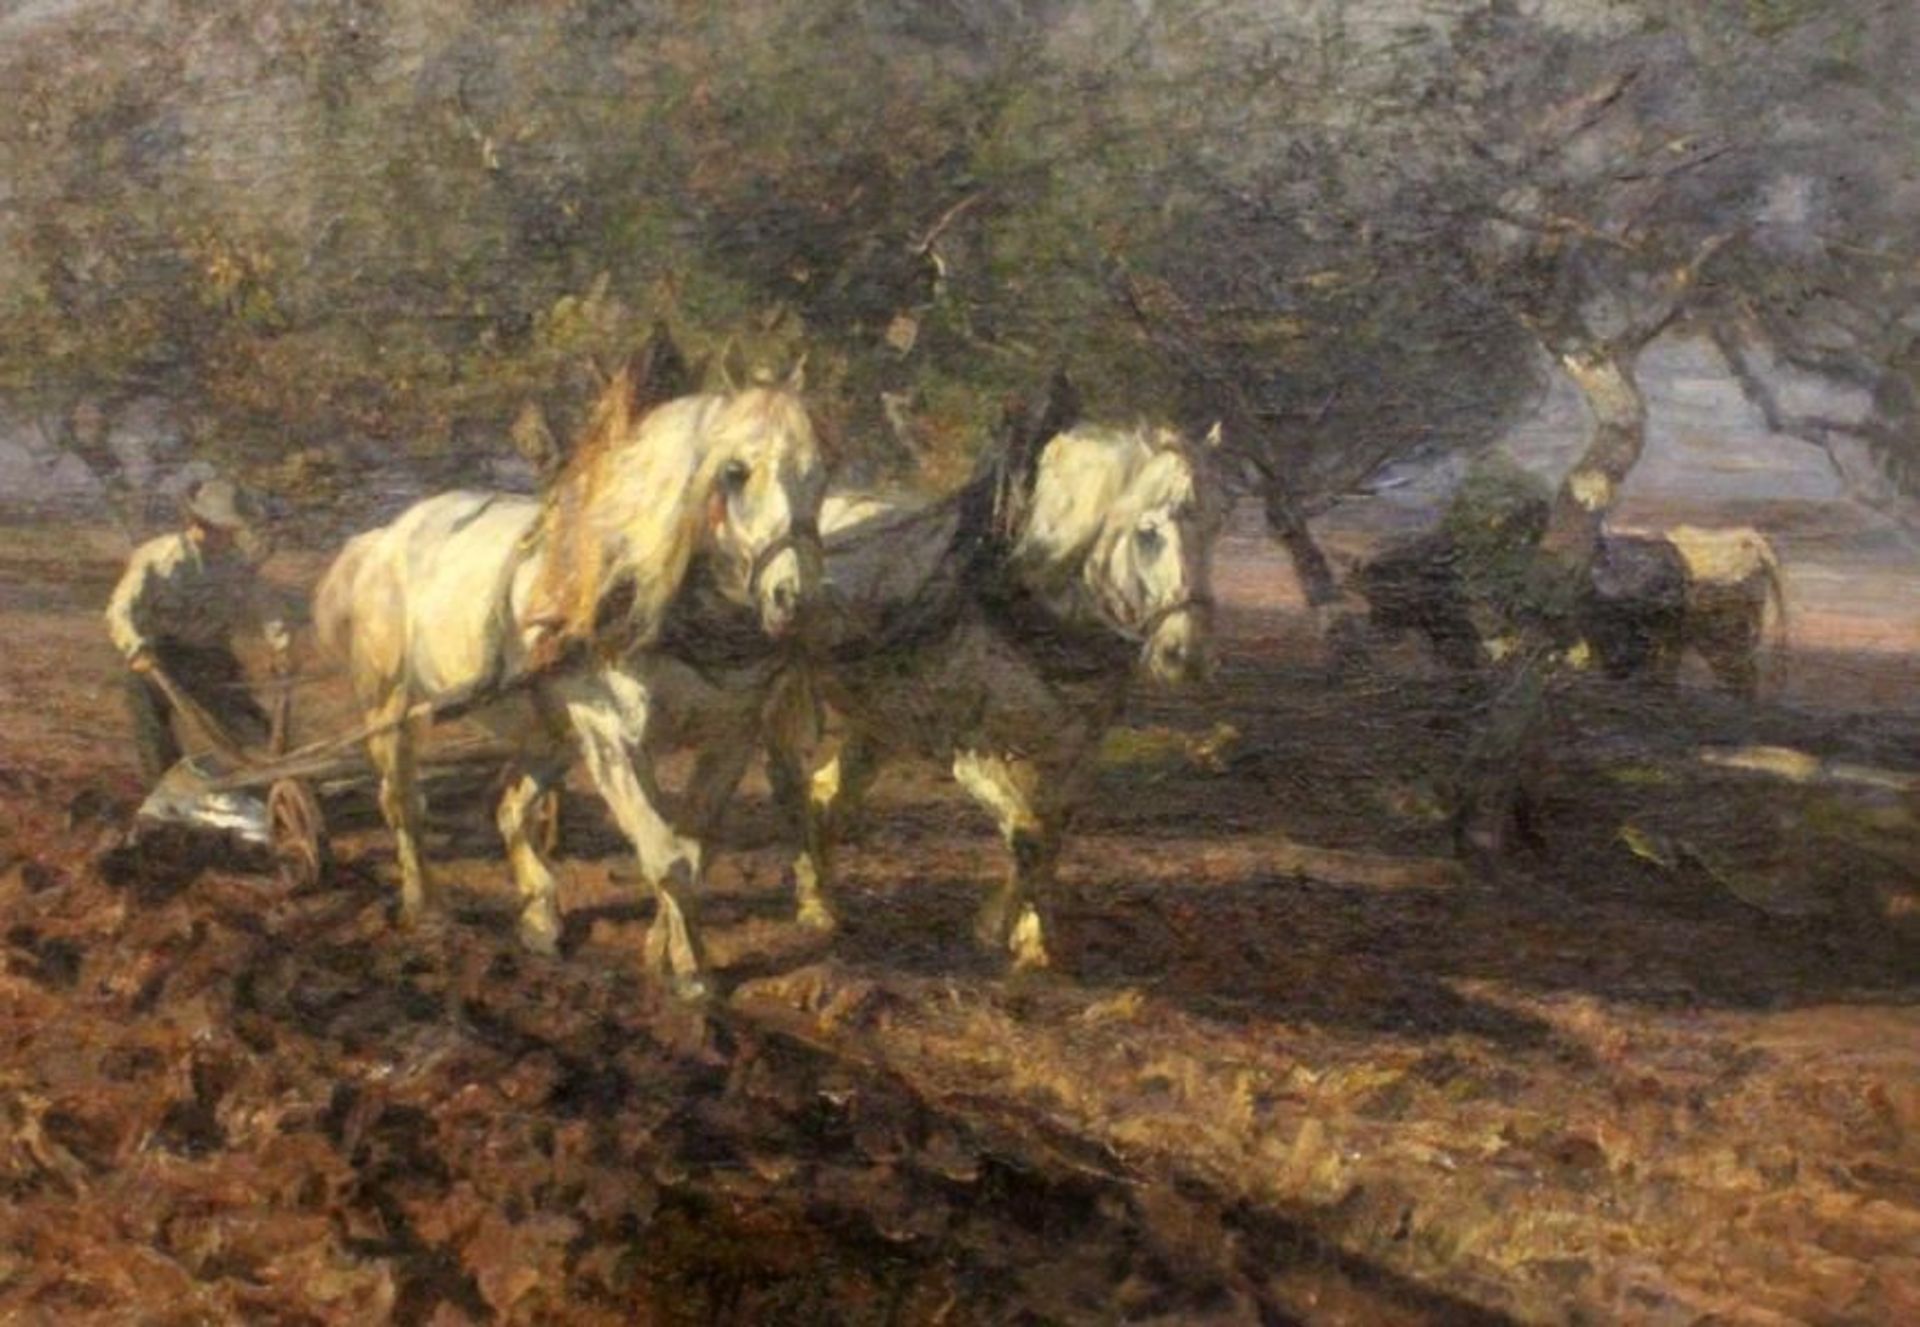 ZÜGEL, HEINRICH VON Murrhardt 1850 - 1941 München Ploughing peasant with horses. Oil on canvas,